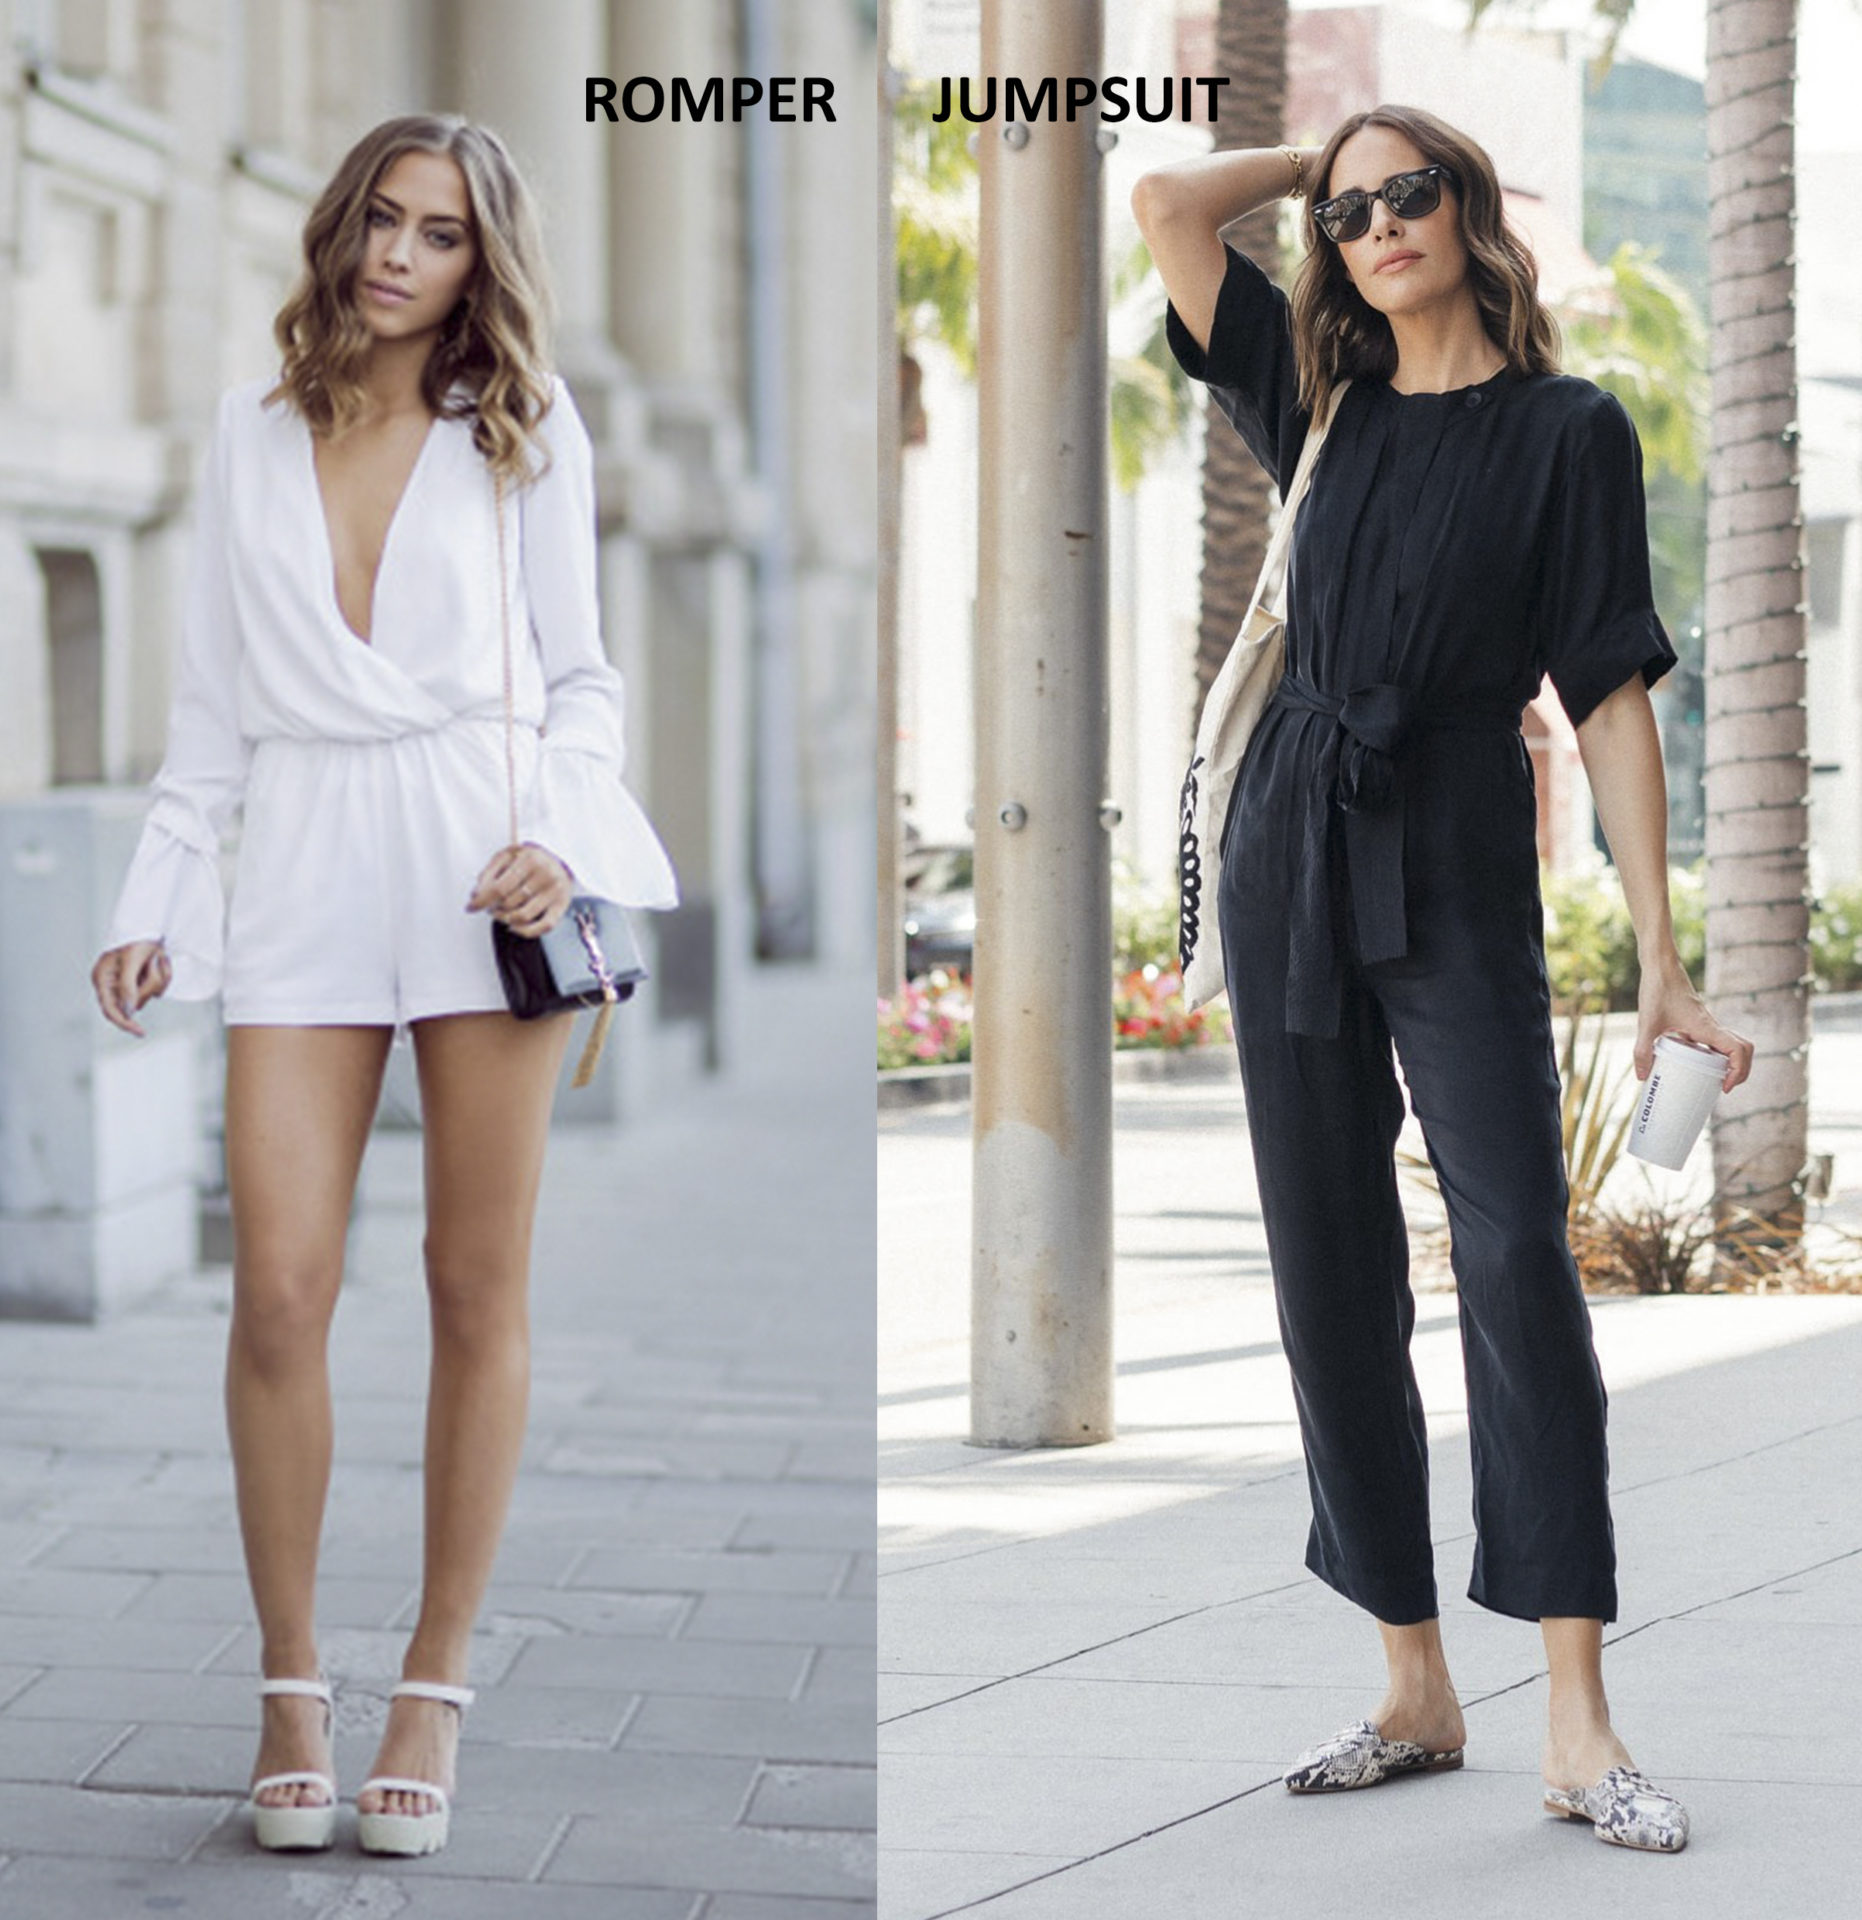 Sự khác nhau của romper và jumpsuit